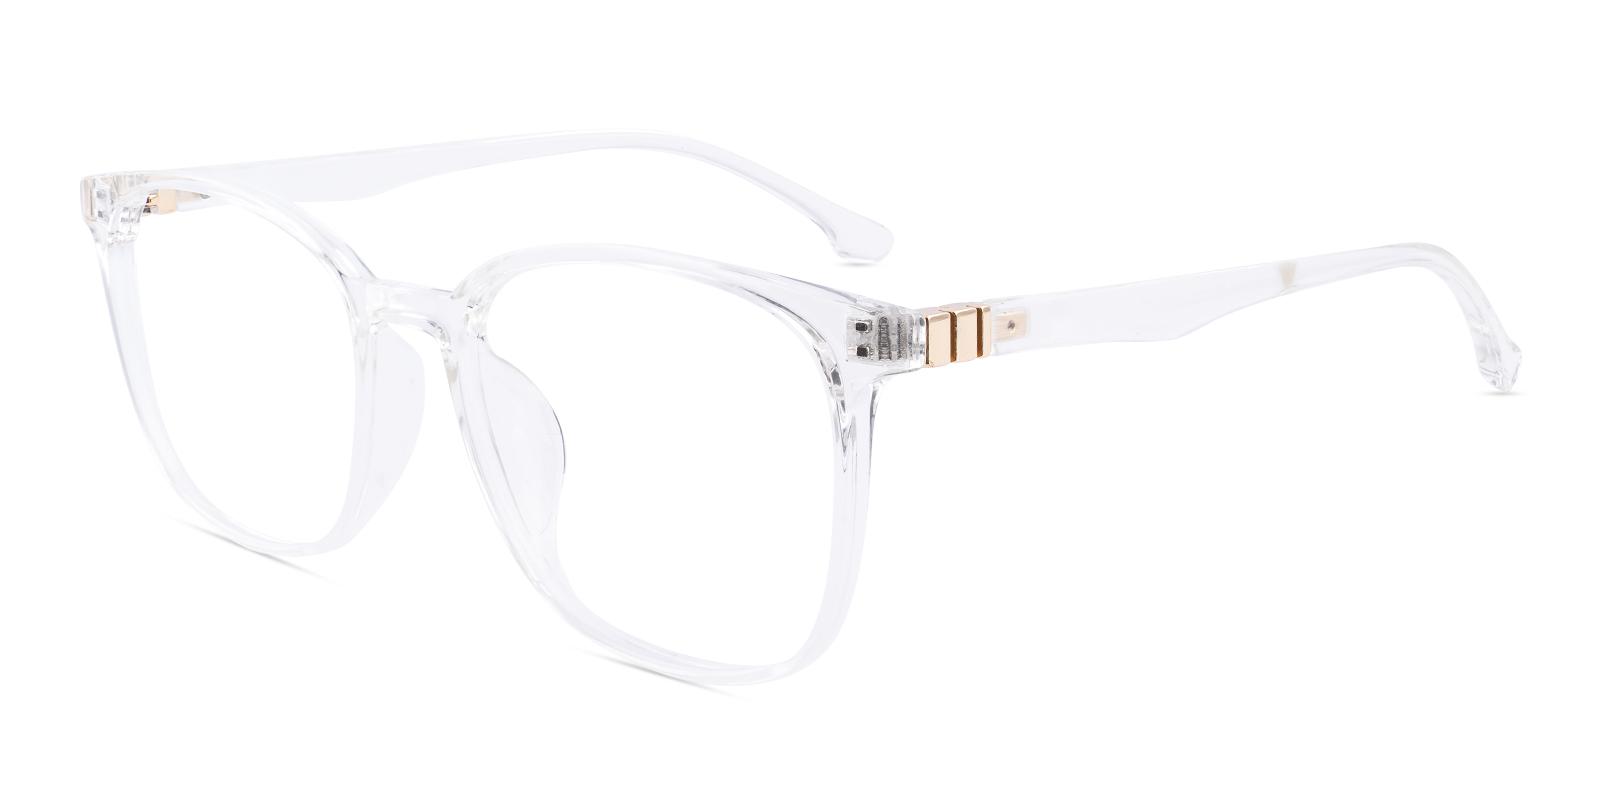 Oram Fclear Plastic Eyeglasses , UniversalBridgeFit Frames from ABBE Glasses